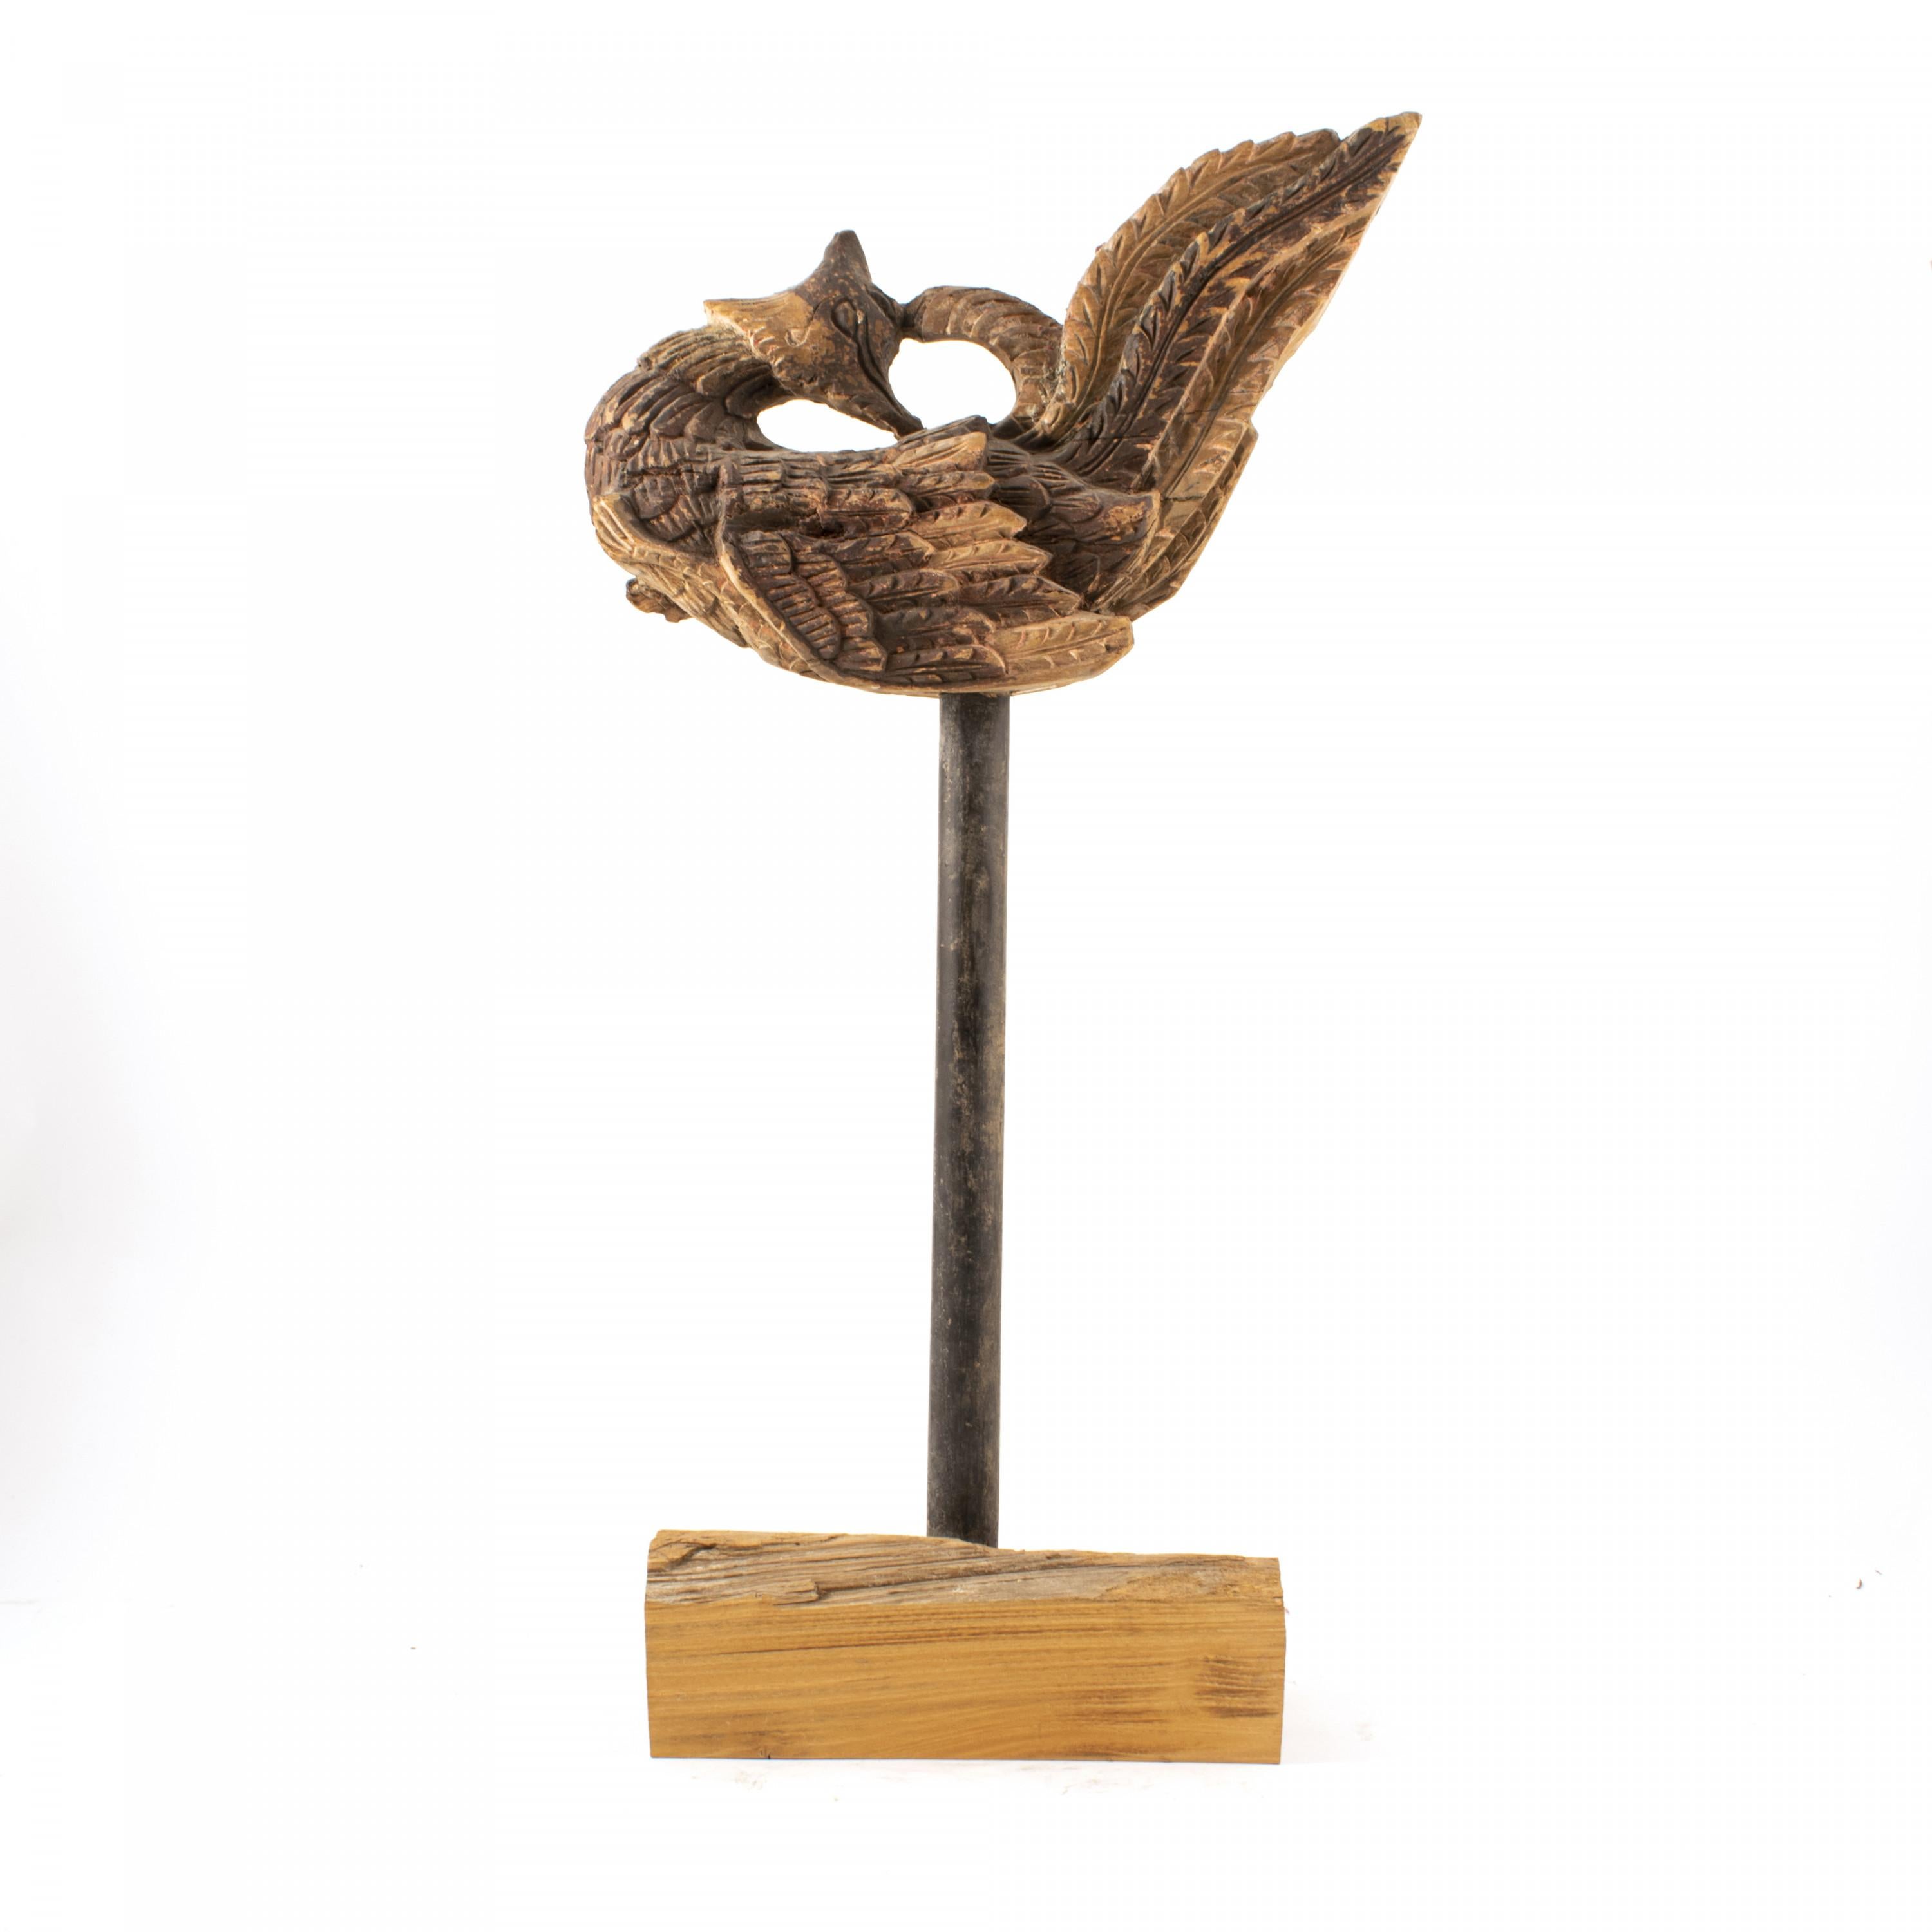 Oiseau phénix décoratif du XVIIIe siècle en bois laqué polychrome. Originaire de la province du Henan, en Chine.
État d'origine intact.
Mesures : Hauteur oiseau 22,5 cm, total 58 cm.
  